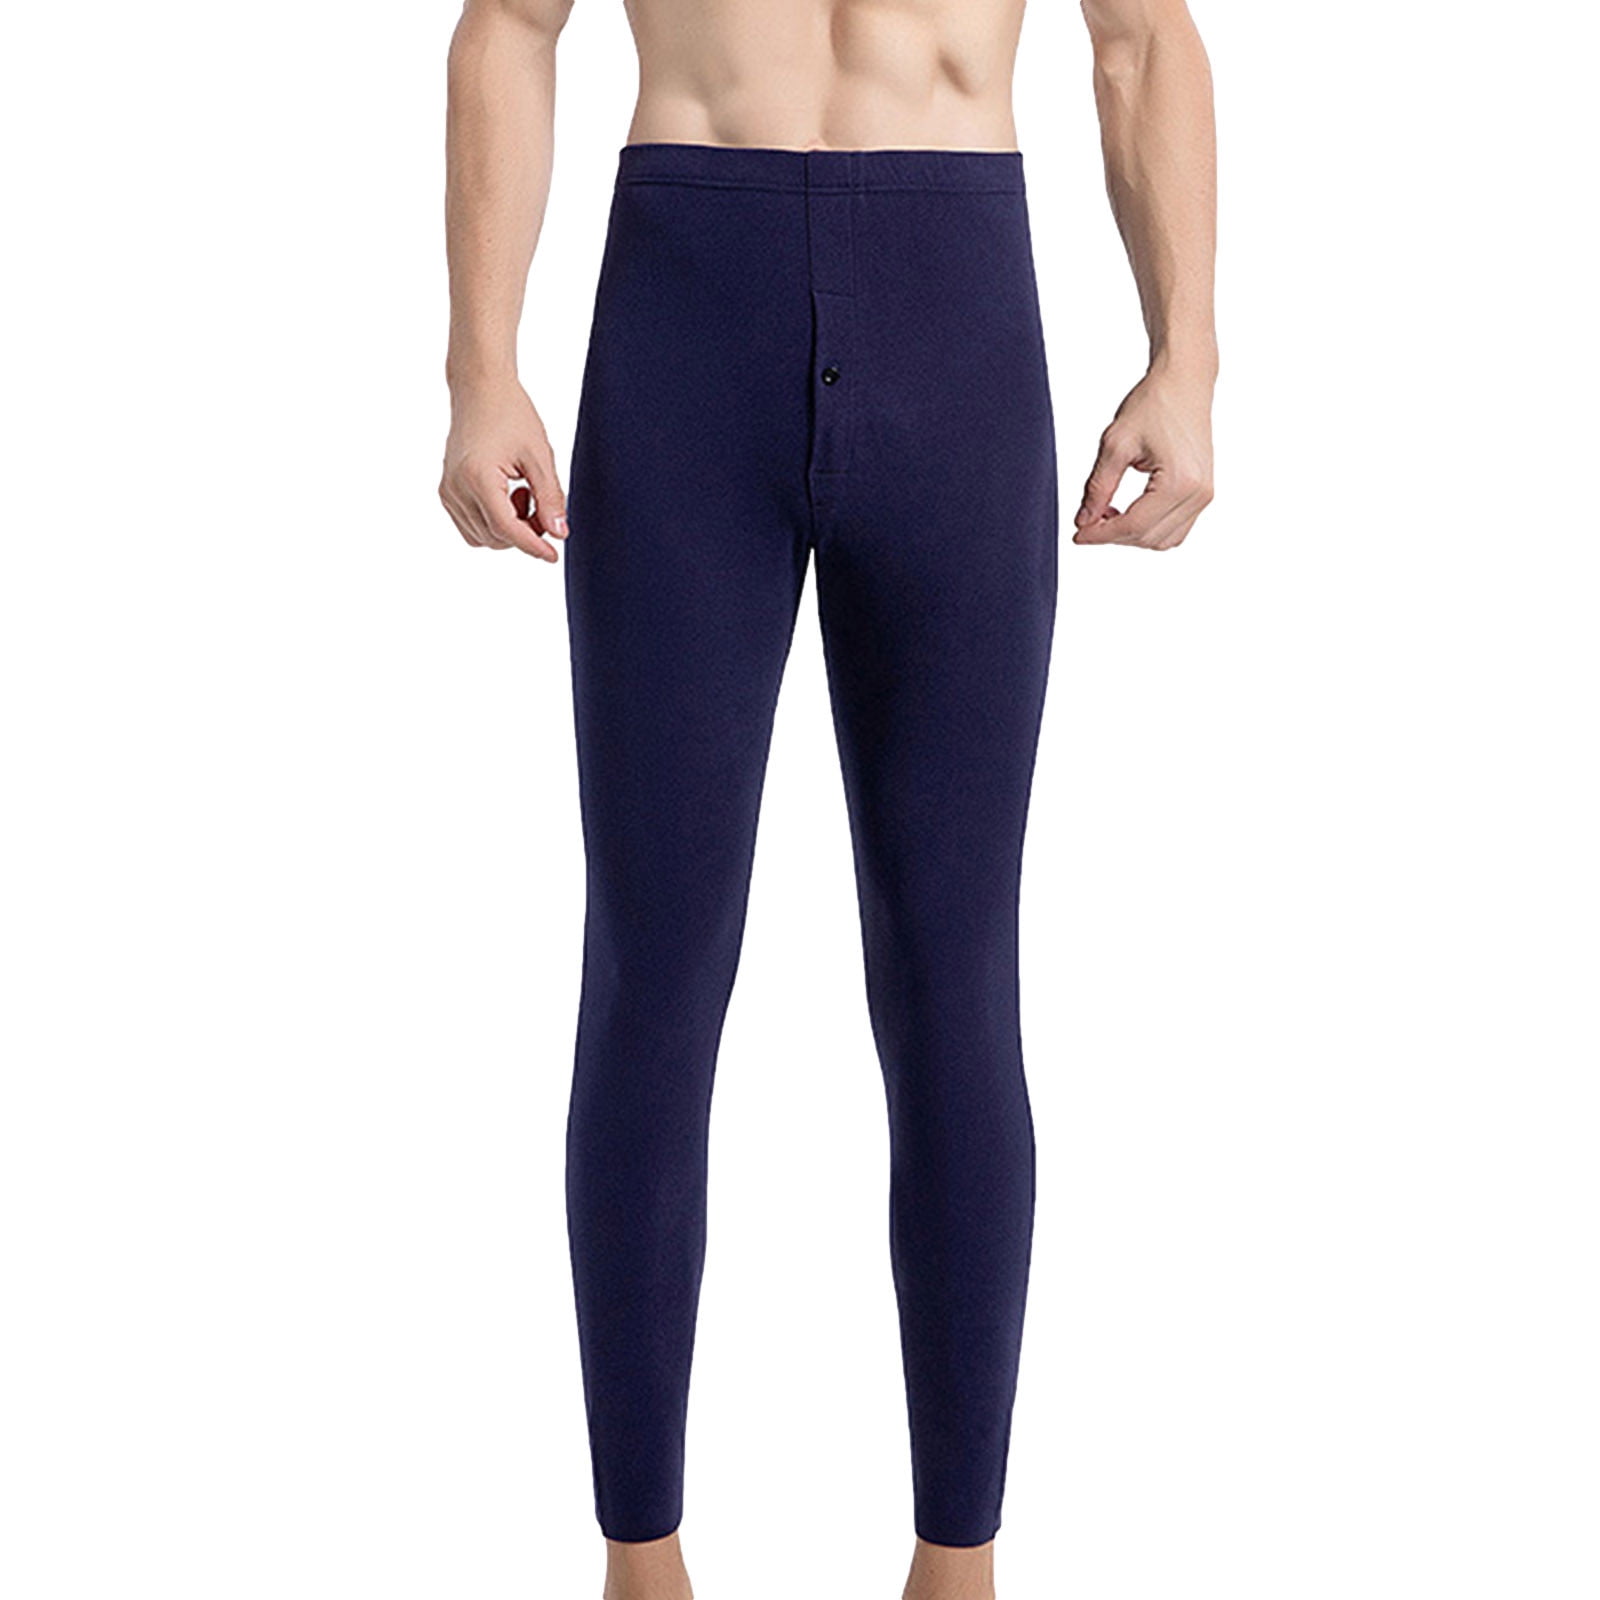 Men's Thermal Leggings - UltraFlex Clothing